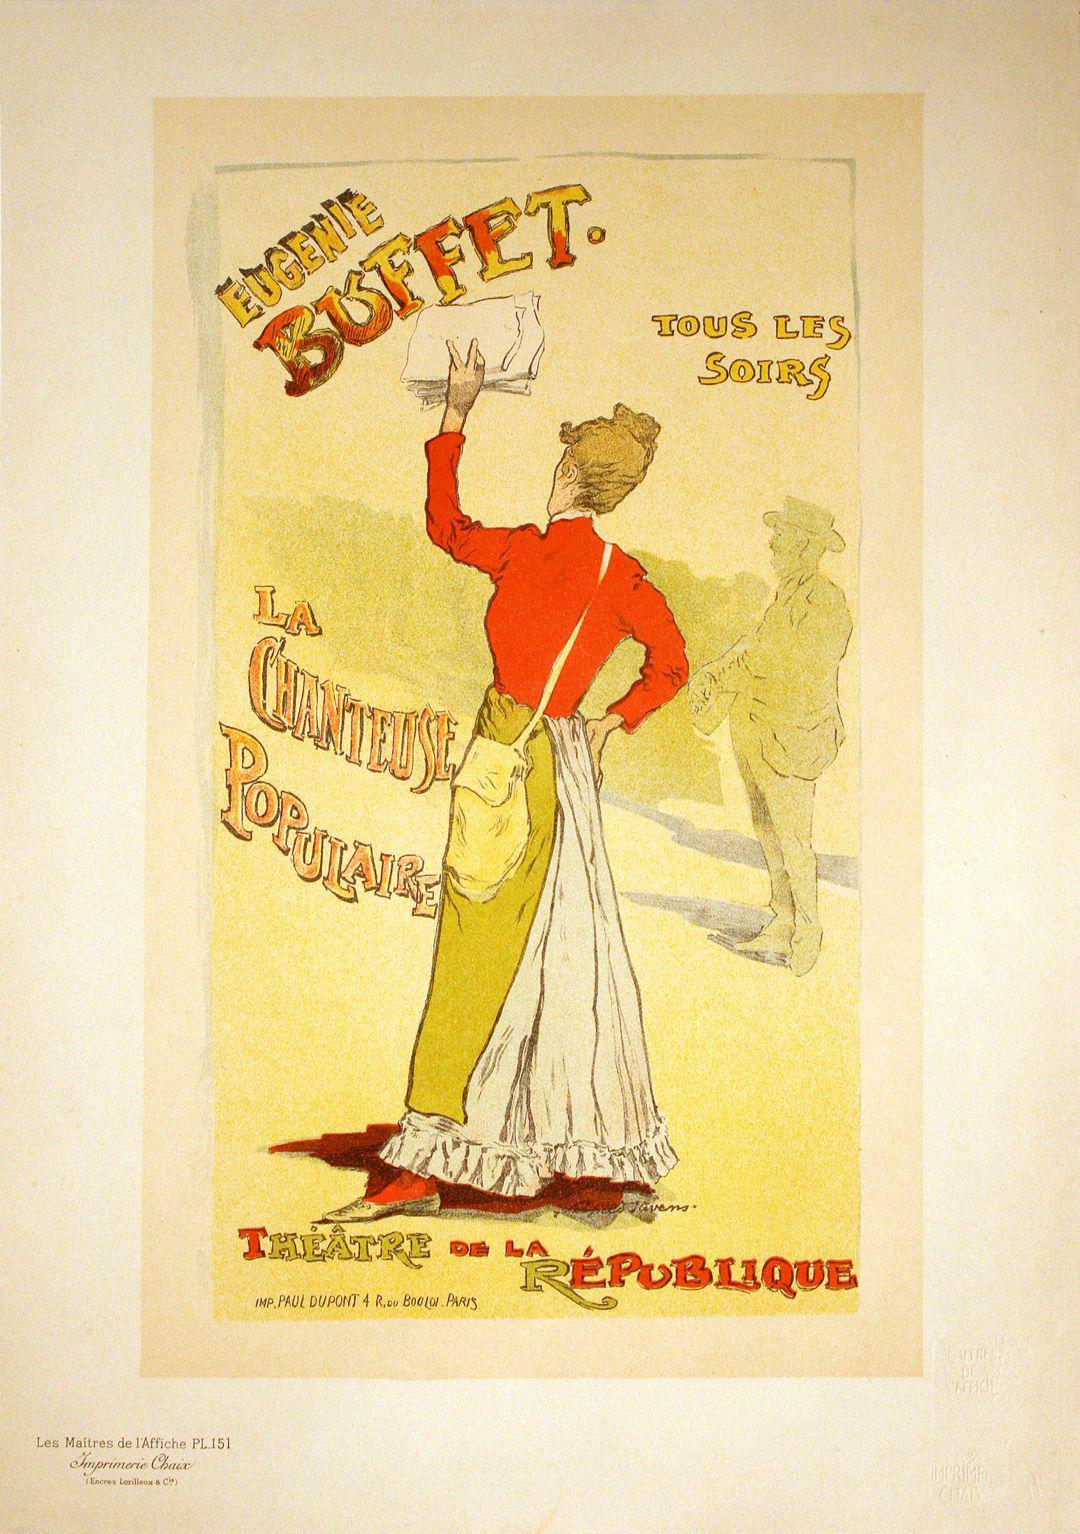 Original Maitres de L'Affiche Poster PL 151 - Eugenie Buffet by Stevens